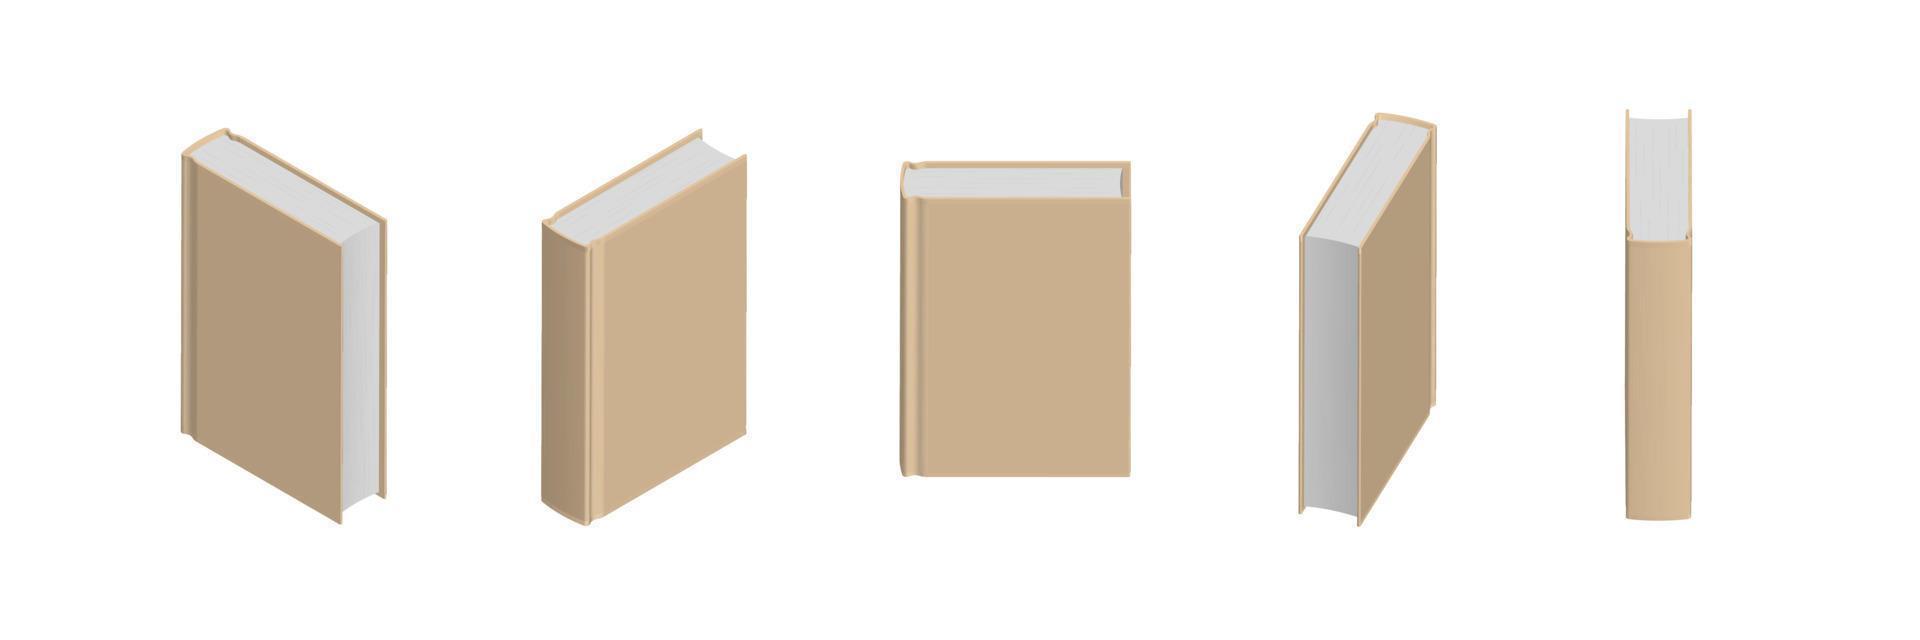 uppsättning stängda beige böcker i olika positioner för bokhandel vektor